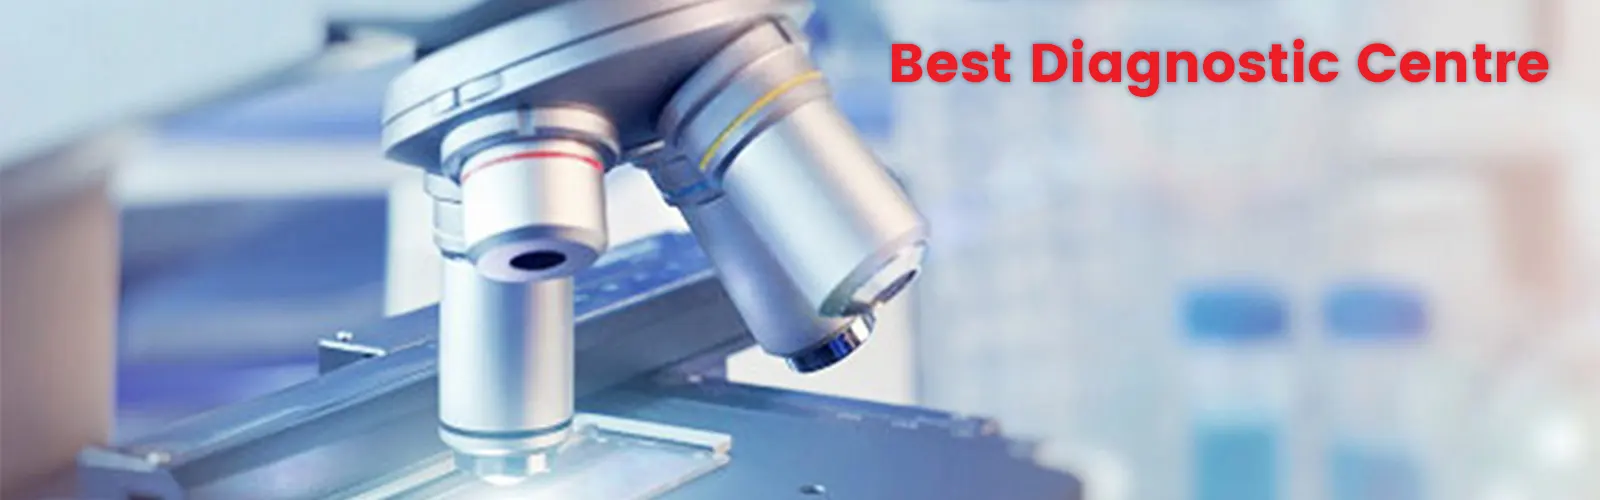 Features That Make a Diagnostic Centre the Best Diagnostic Centre